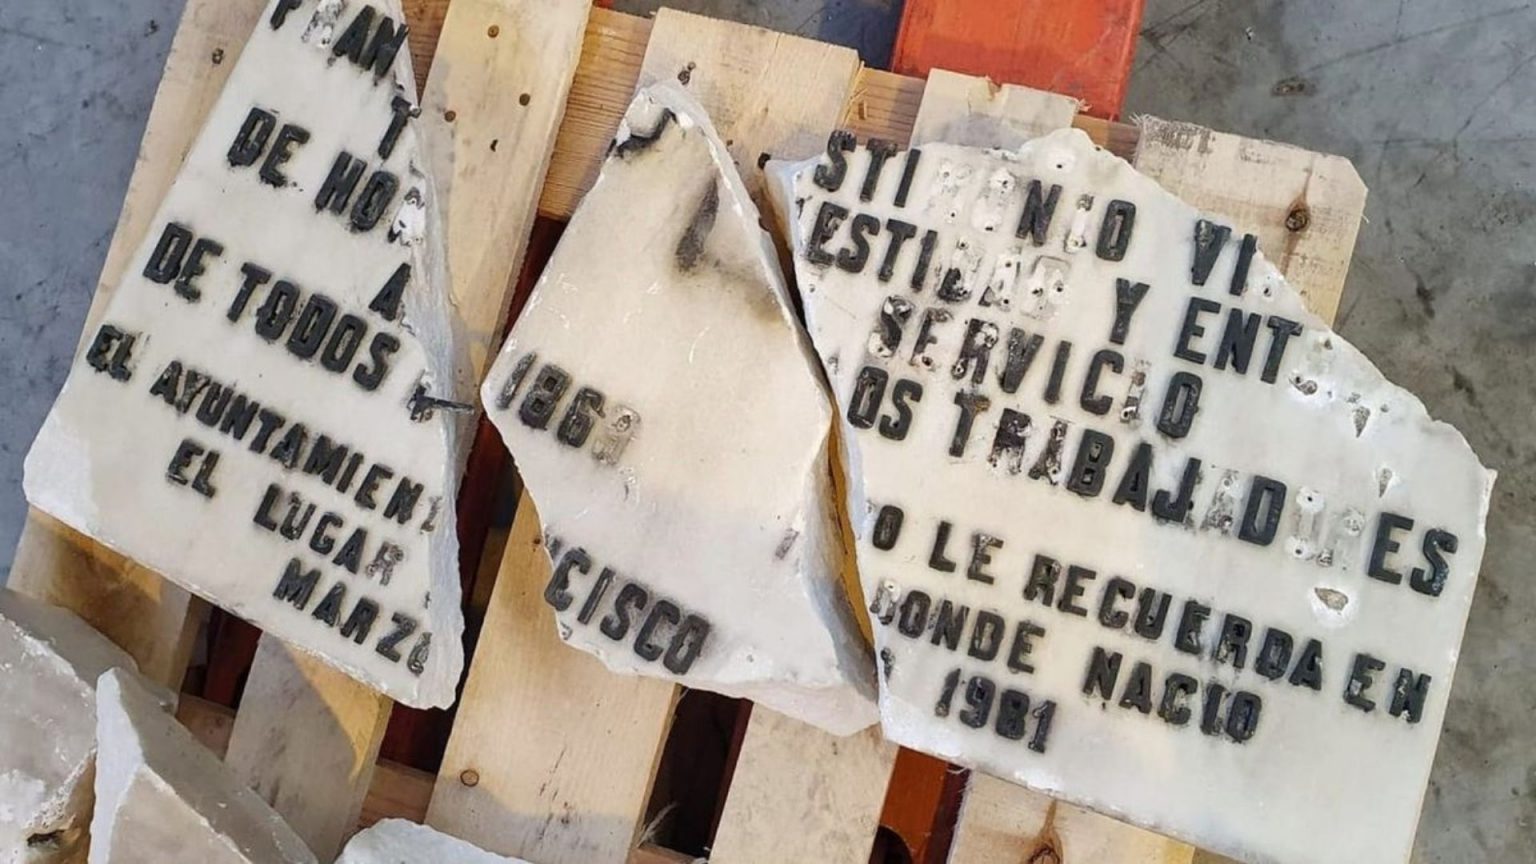 La Justicia investigará la retirada de la placa de Largo Caballero en Madrid